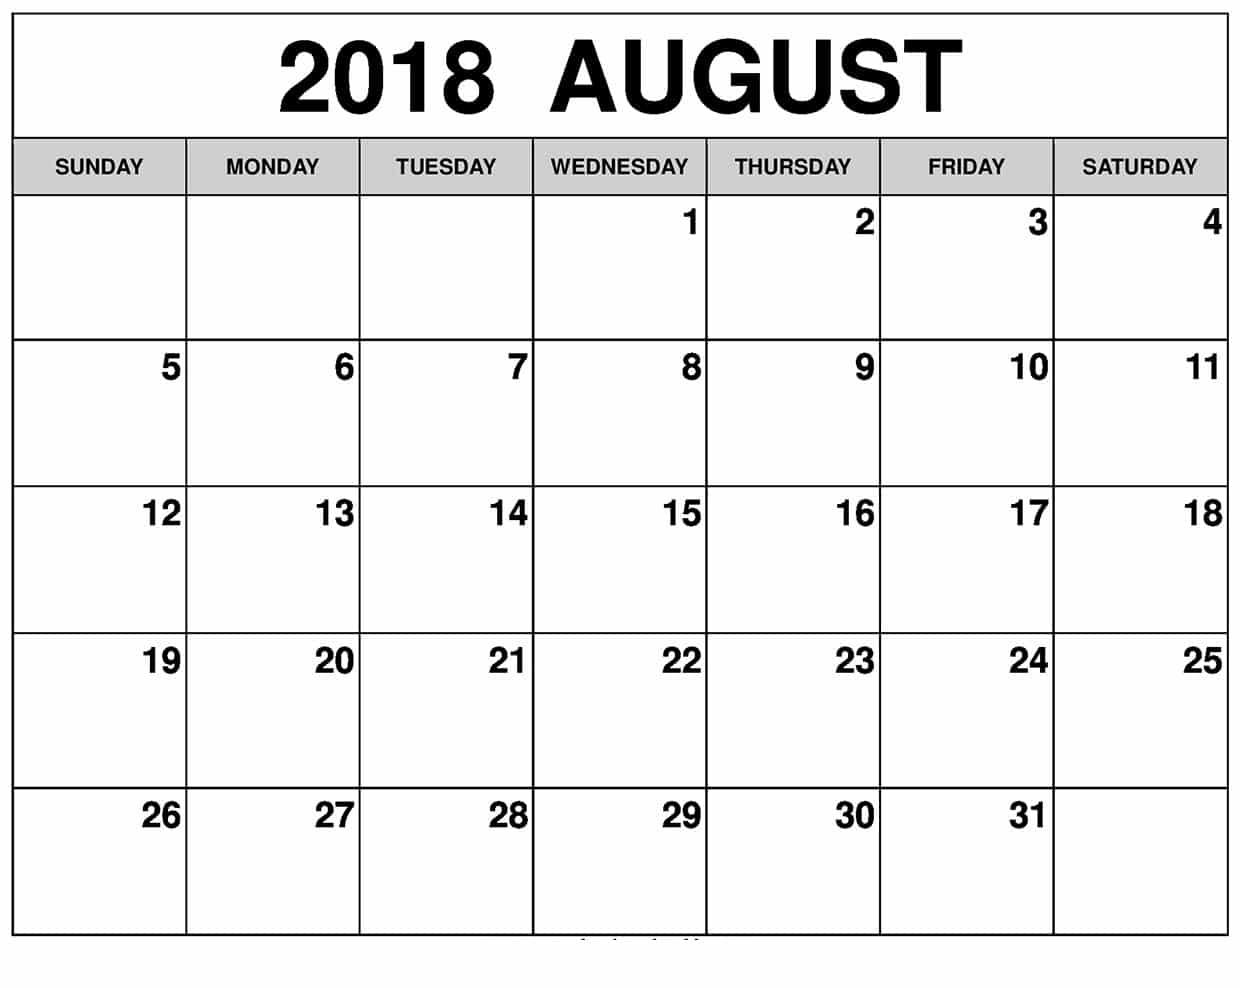 august-2018-calendar-desk-oppidan-library